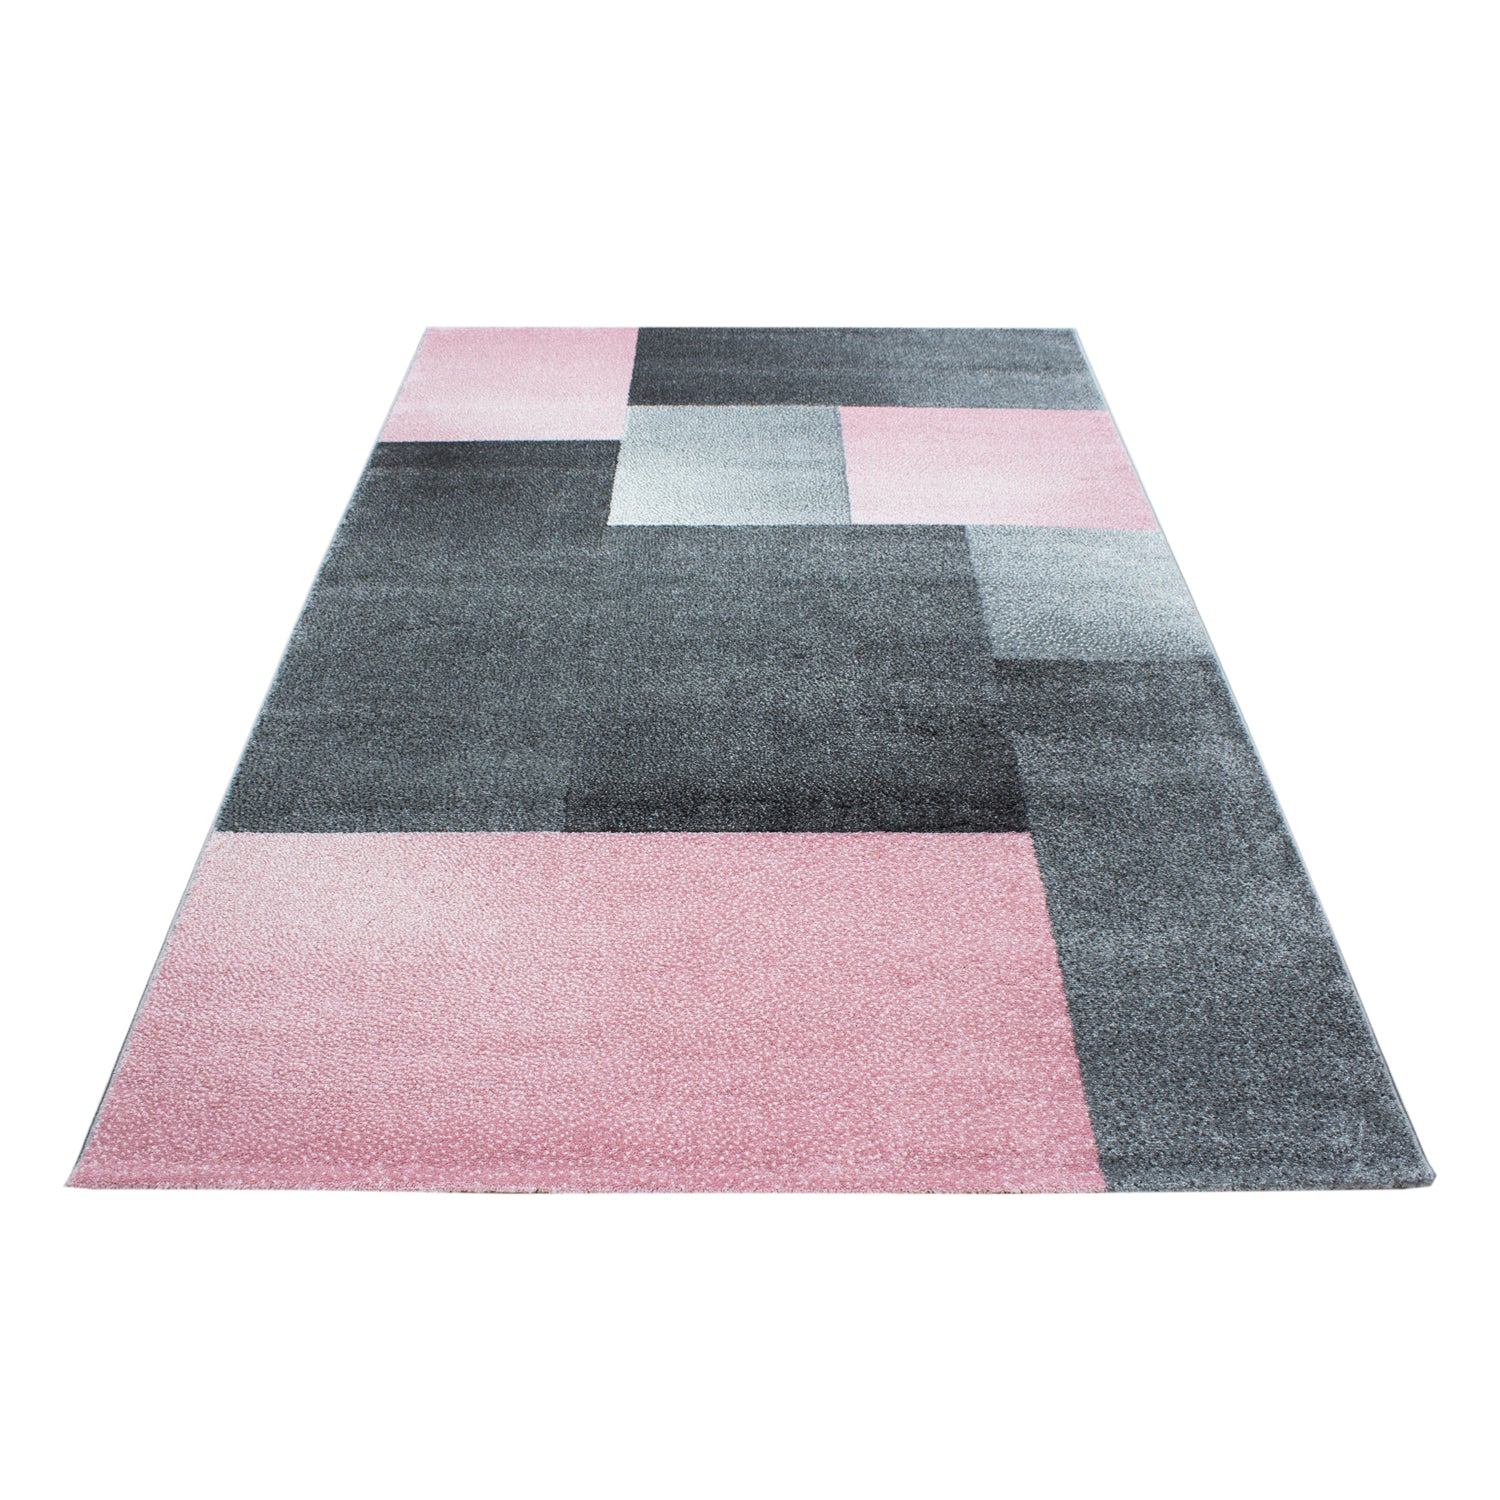 Kurzflor Design Teppich Rechteck Karo Muster Wohnzimmerteppich Grau Pink Meliert